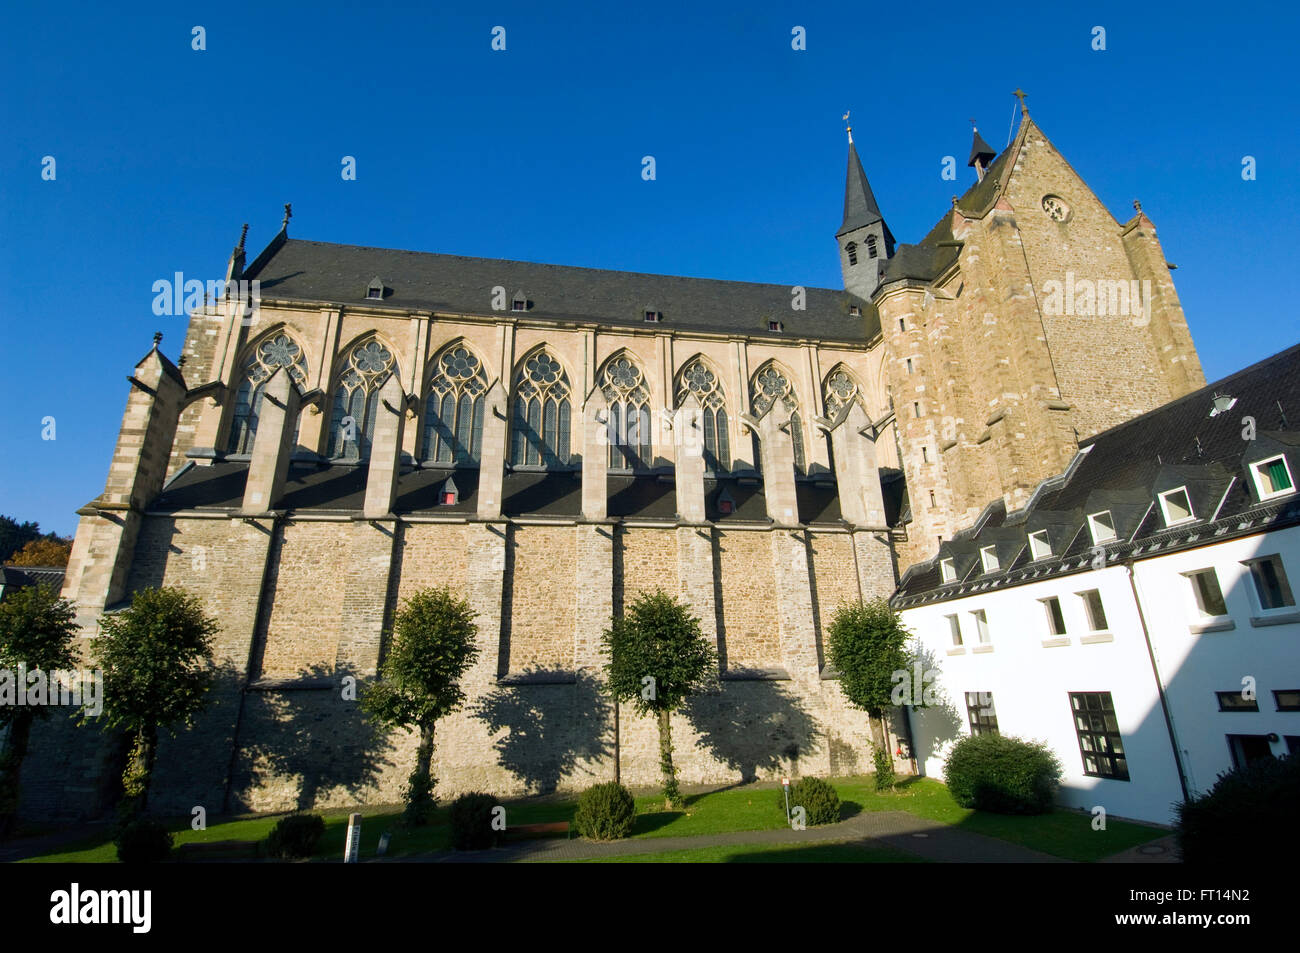 BRD, Nordrheinwestfalen, Rhin-berg, Altenberg, der Altenberger Dom im gotischen Stil ist gebaut und aus. Banque D'Images